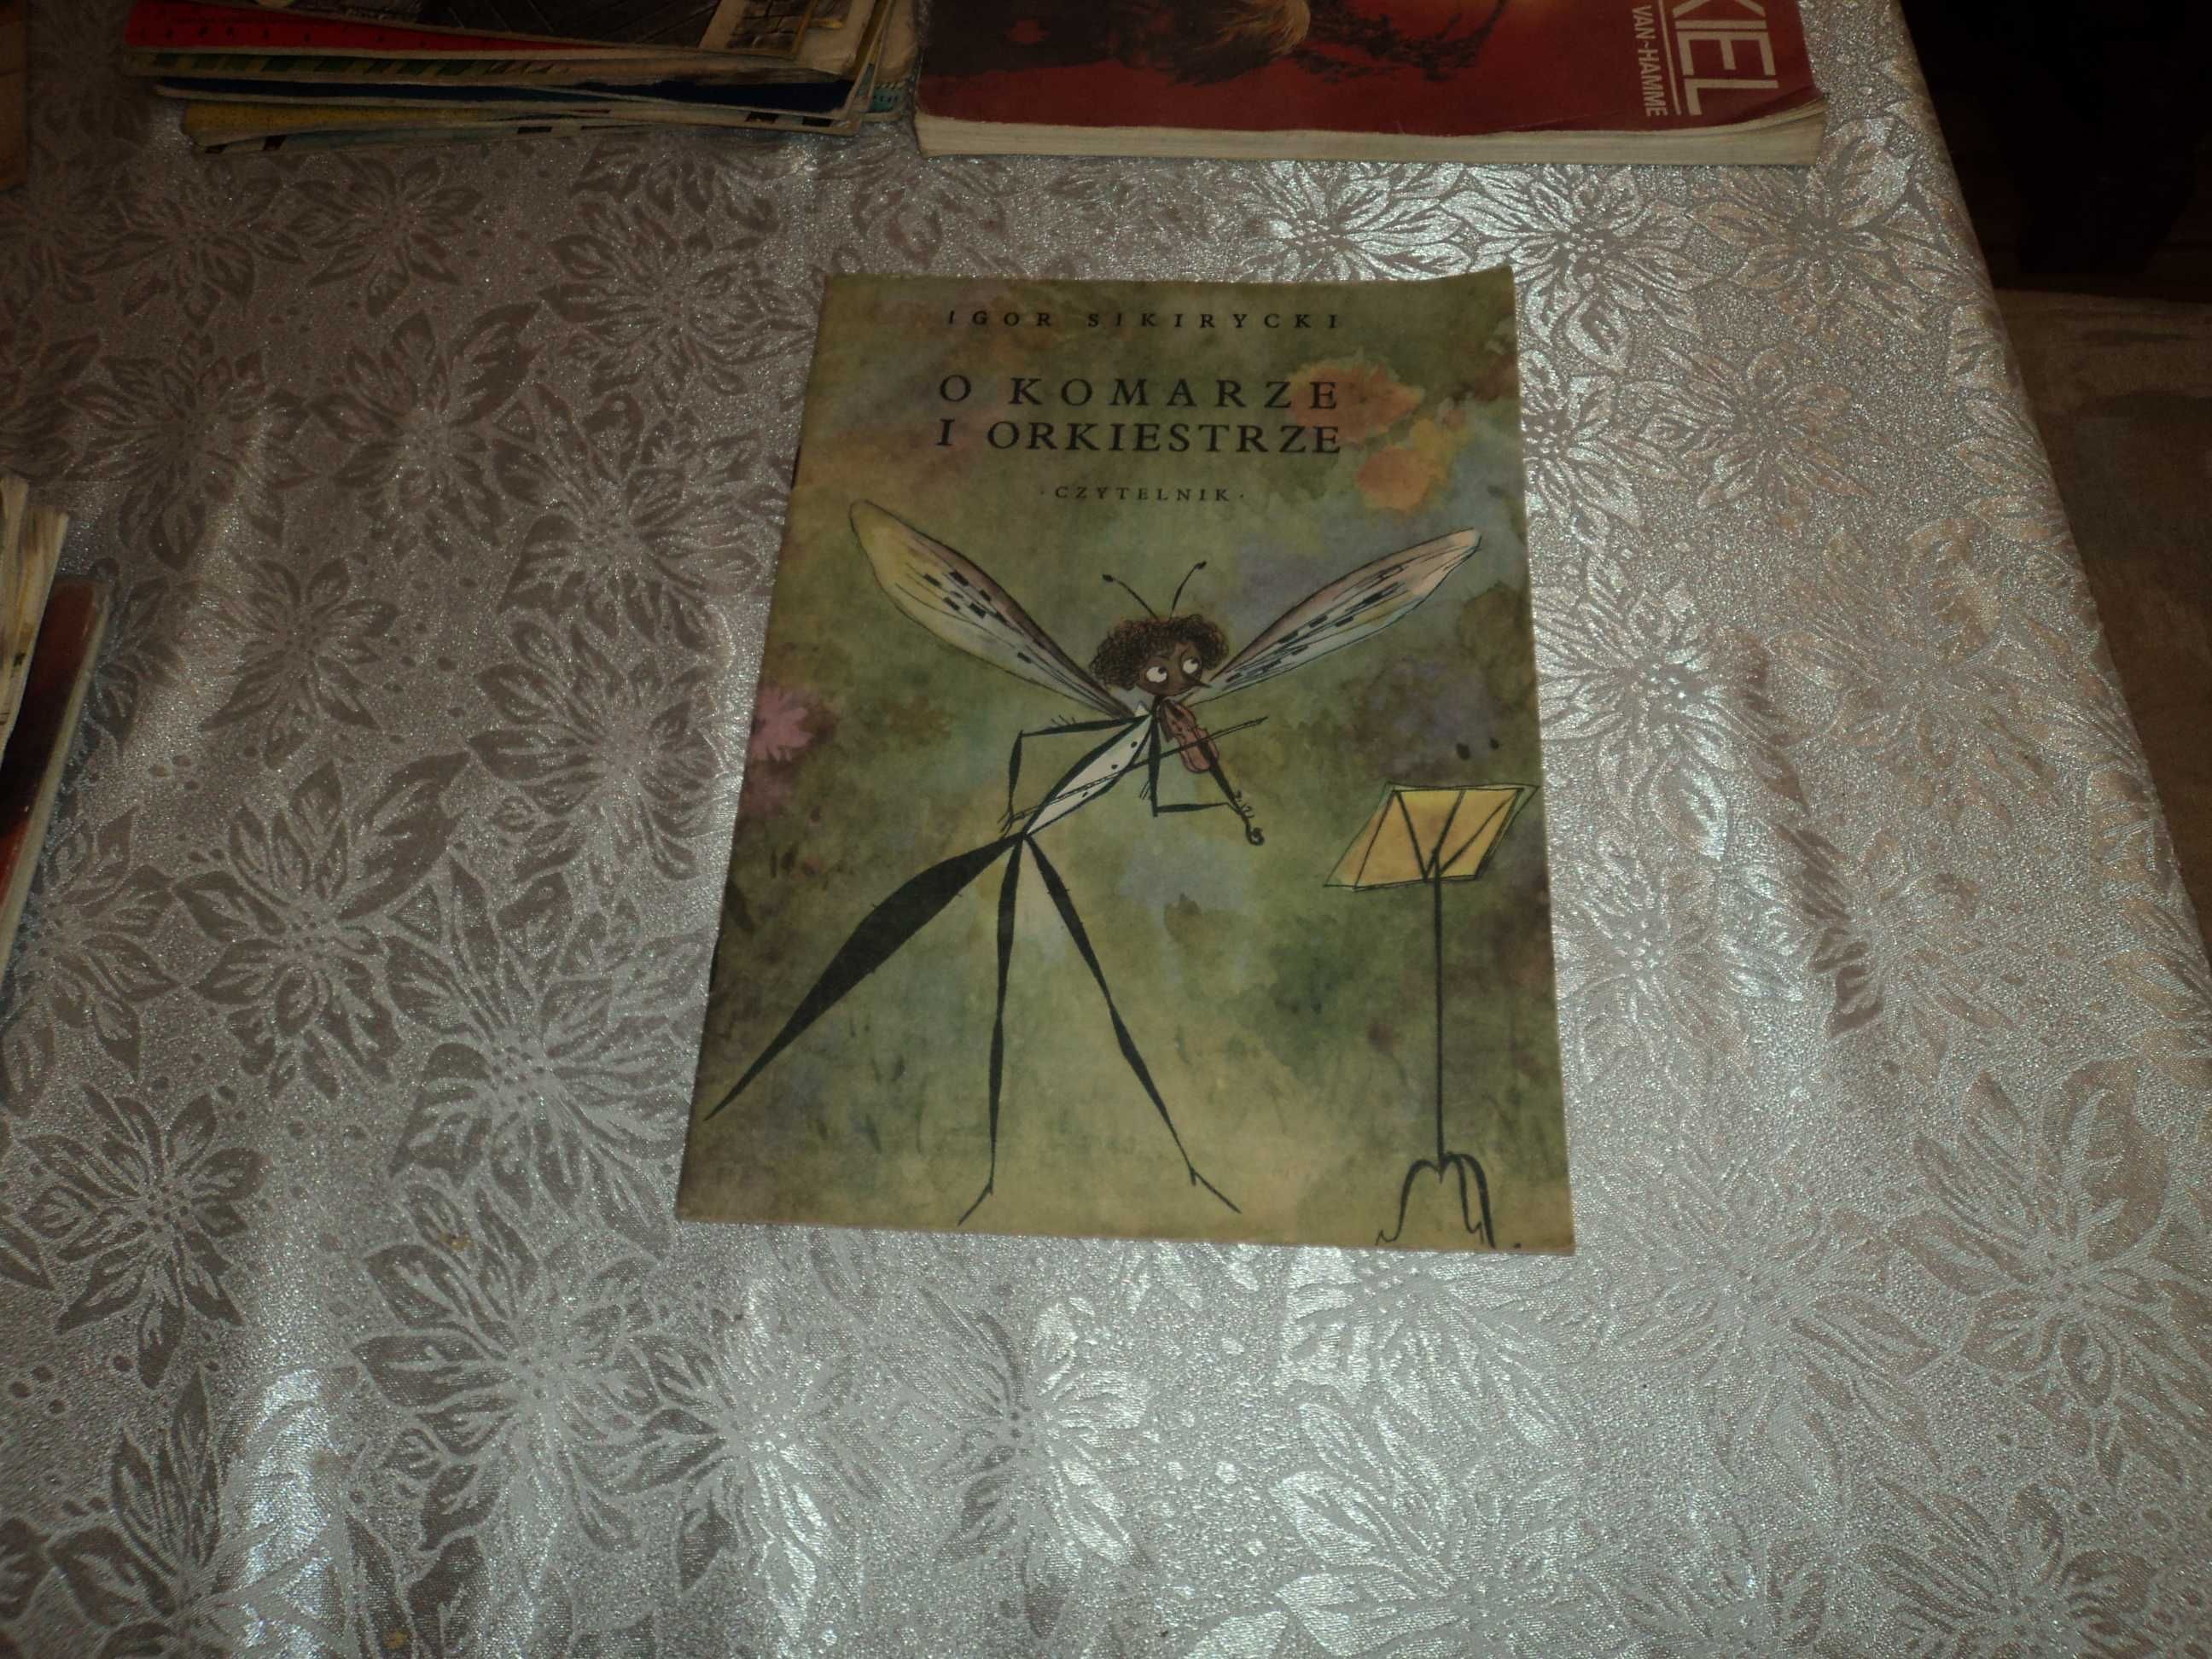 O komarze i orkiestrze il. Szancer 1986